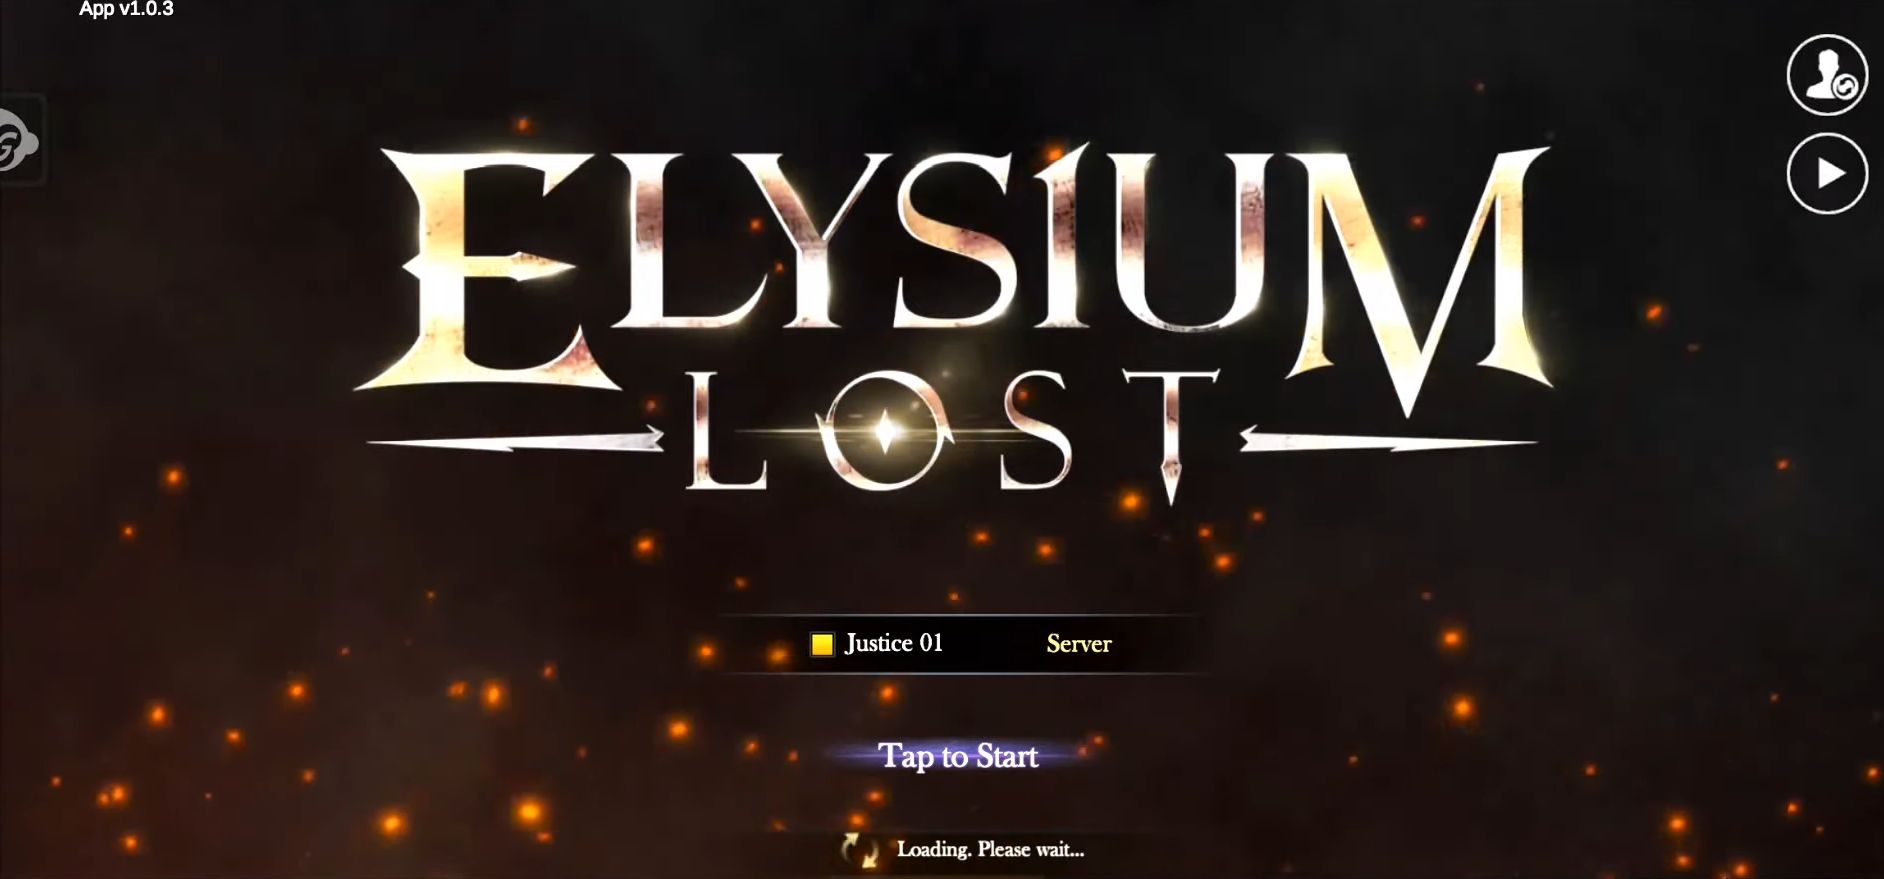 Scarica Elysium Lost gratis per Android.